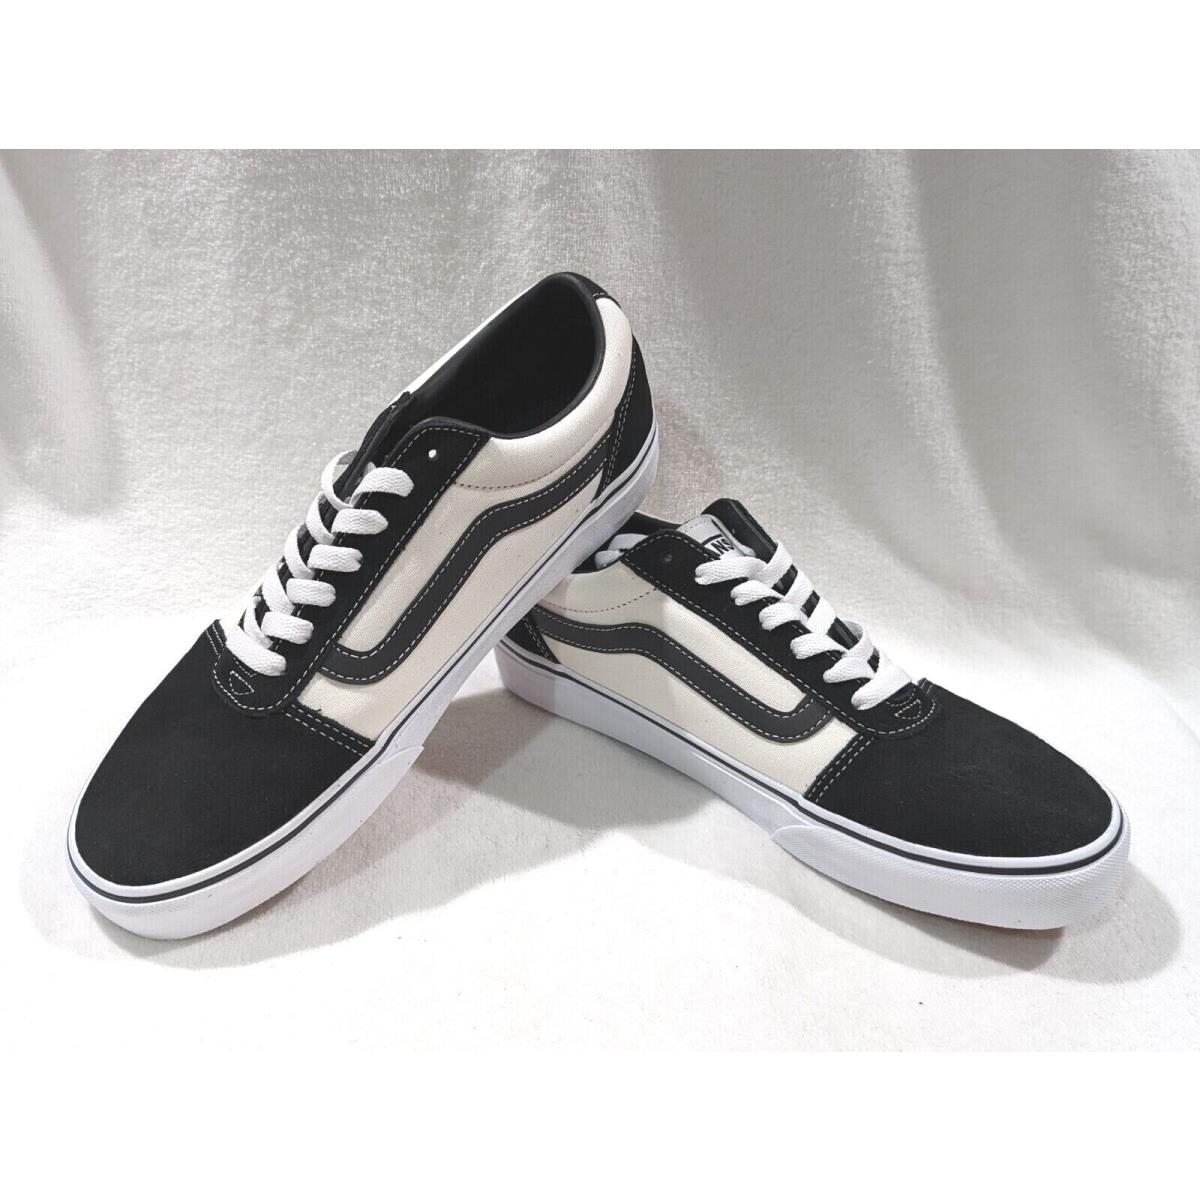 Vans Men`s Ward Retro Marshmallow/black Suede Canvas Skate Shoes - Size 12